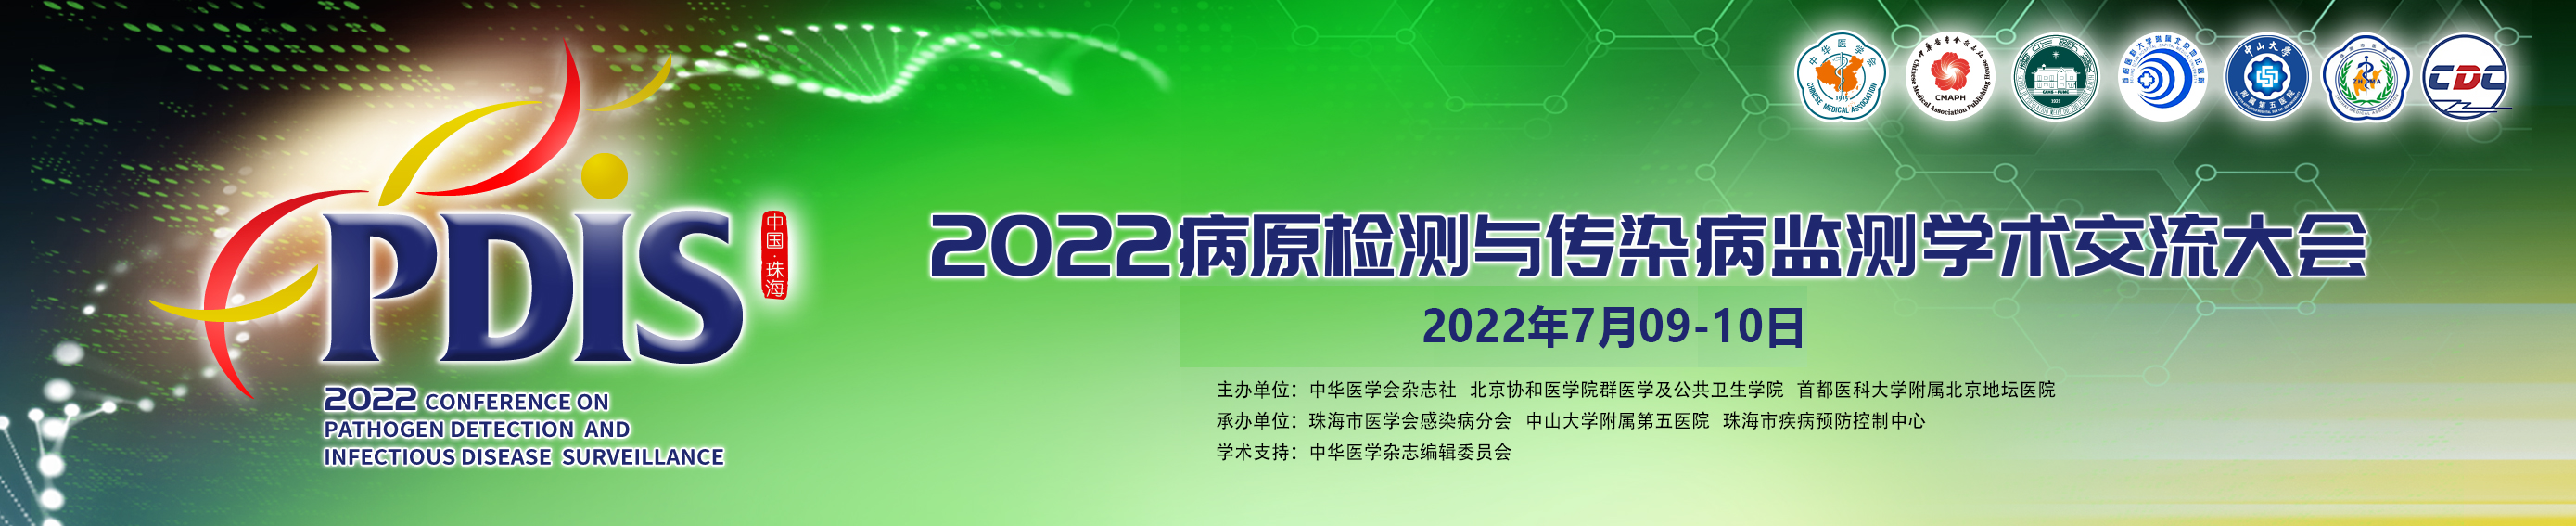 2022年病原检测与传染病监测学术交流大会